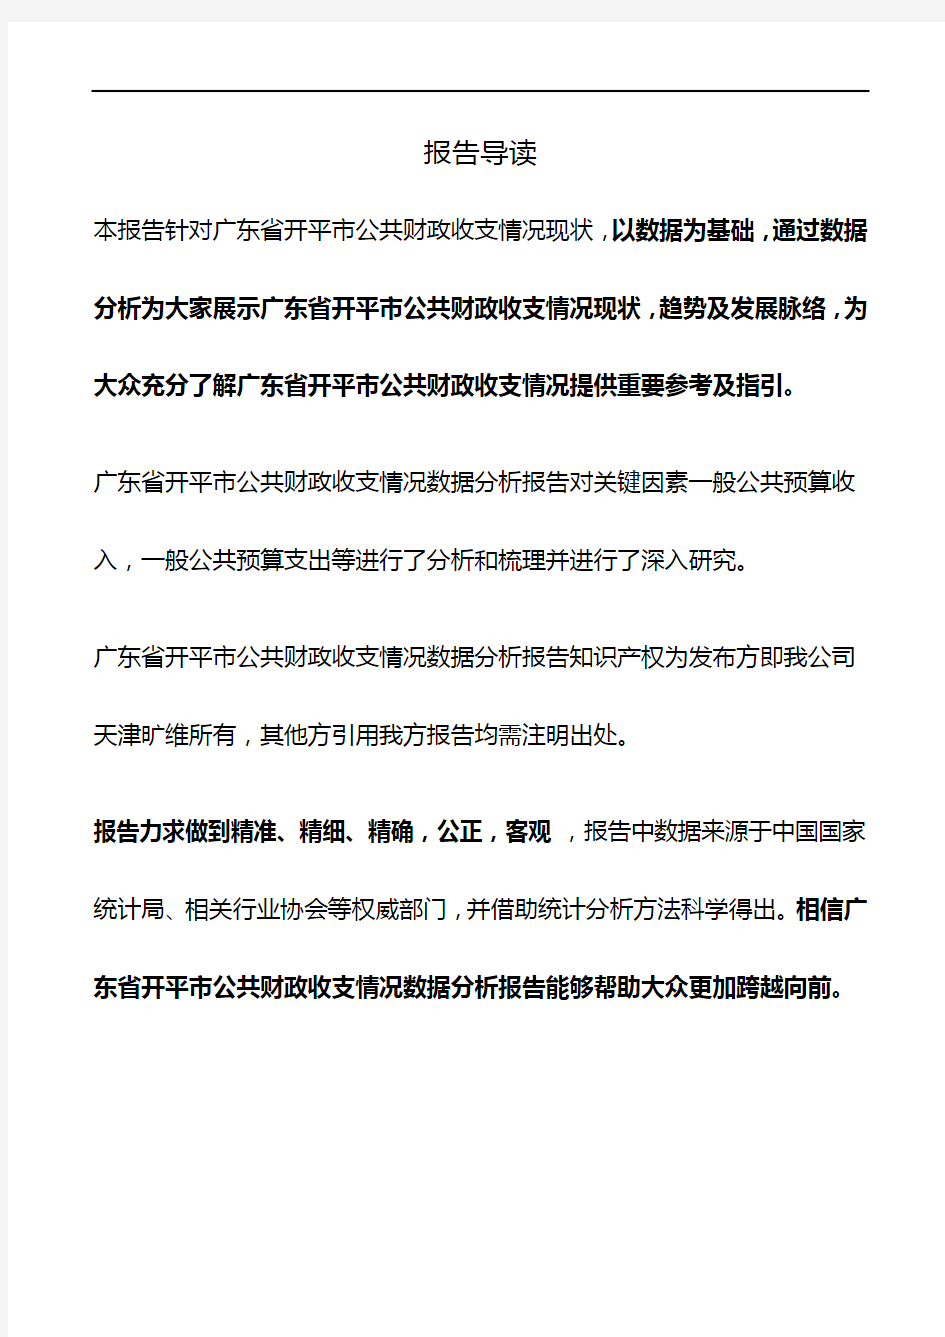 广东省开平市公共财政收支情况3年数据分析报告2019版